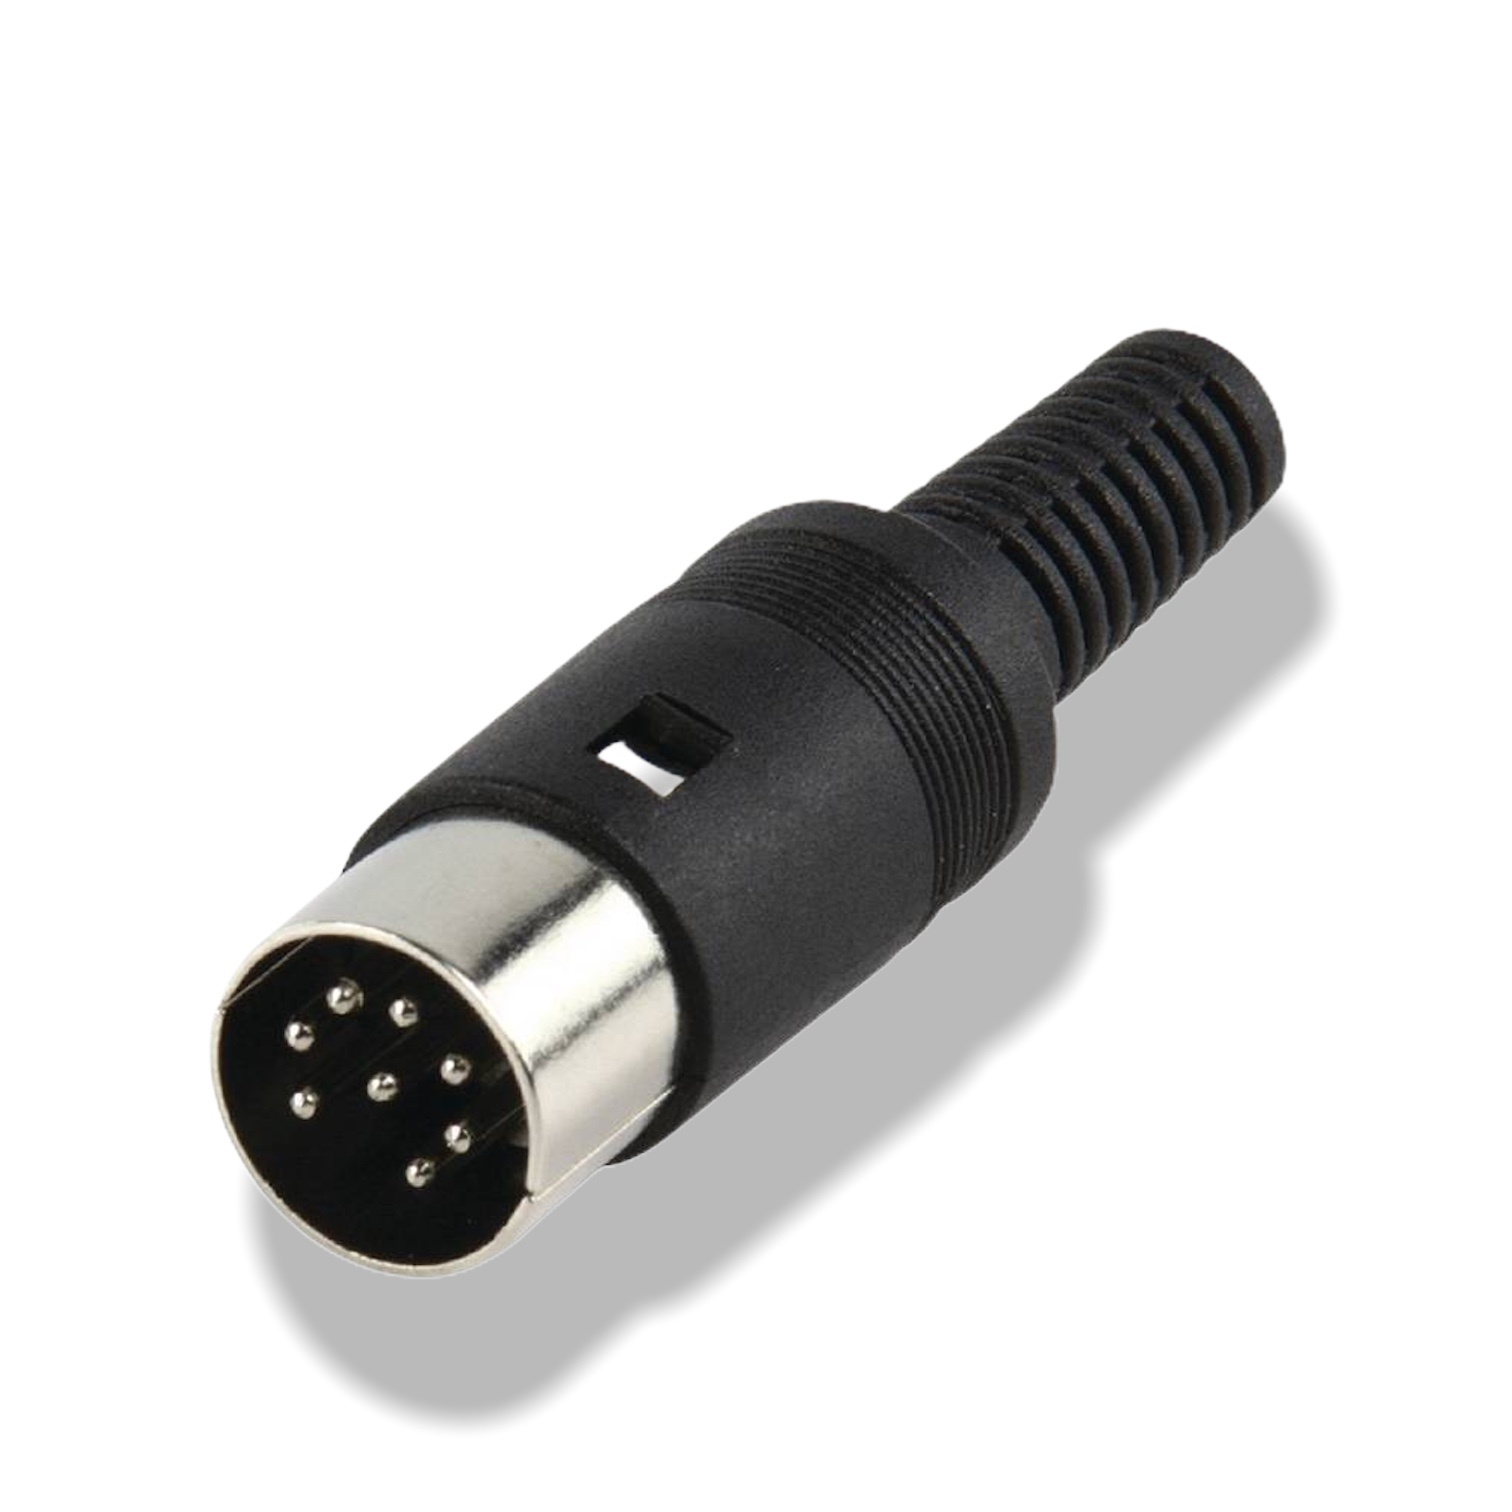 Soldeerbare Plug 8-pin Speciaal voor B&O luidsprekers - IDAV- Domotica Audio Video